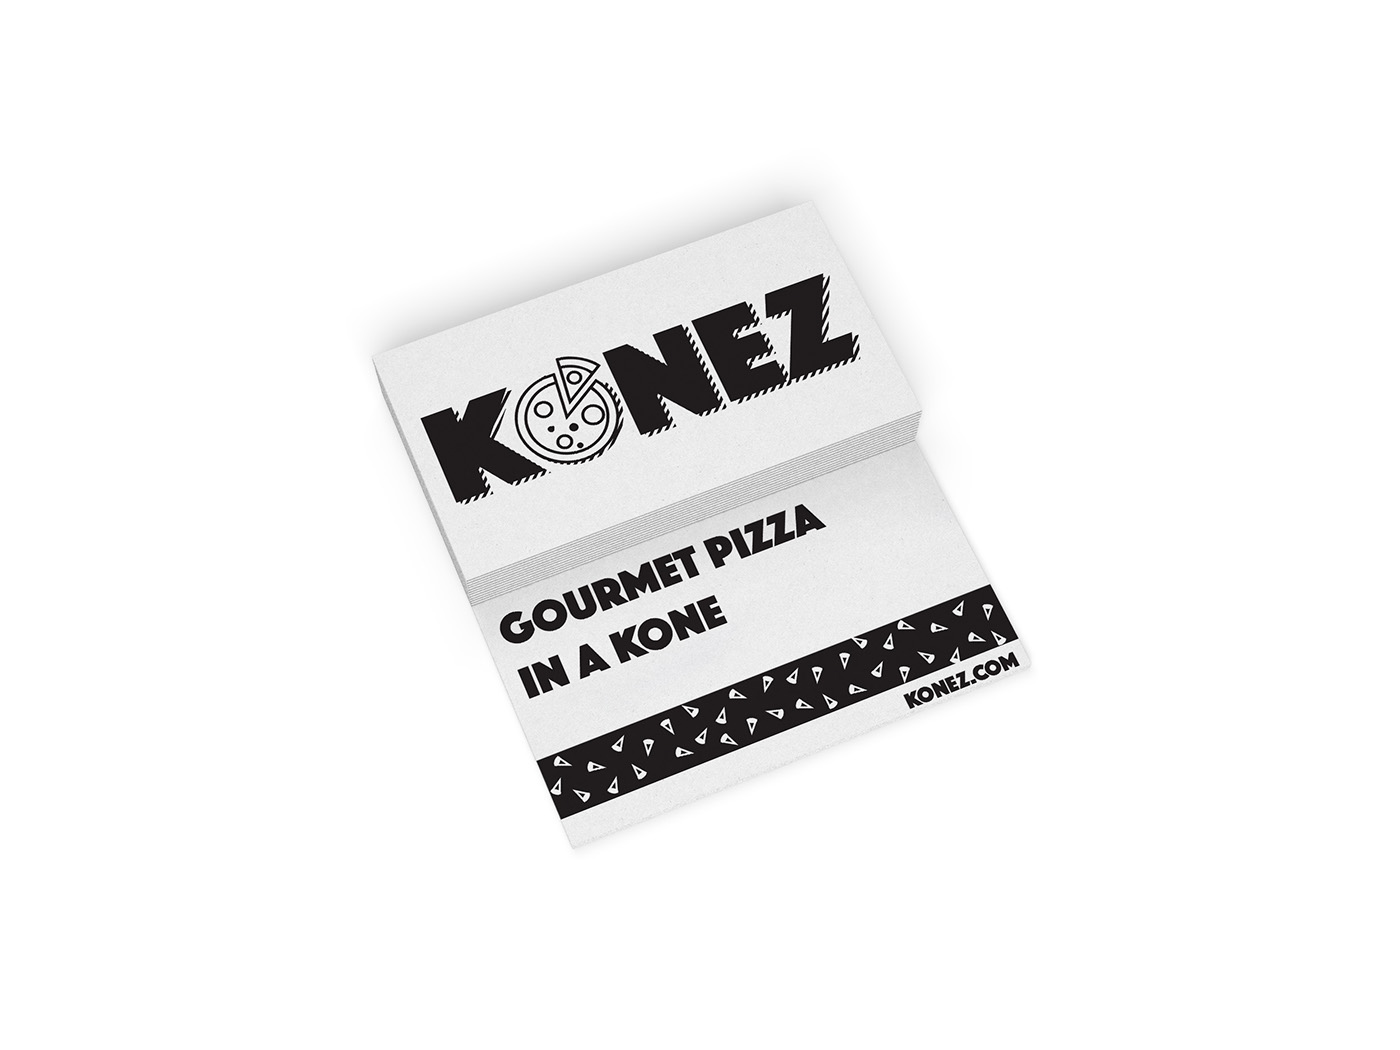 food truck design concept menu design konez pizza cones